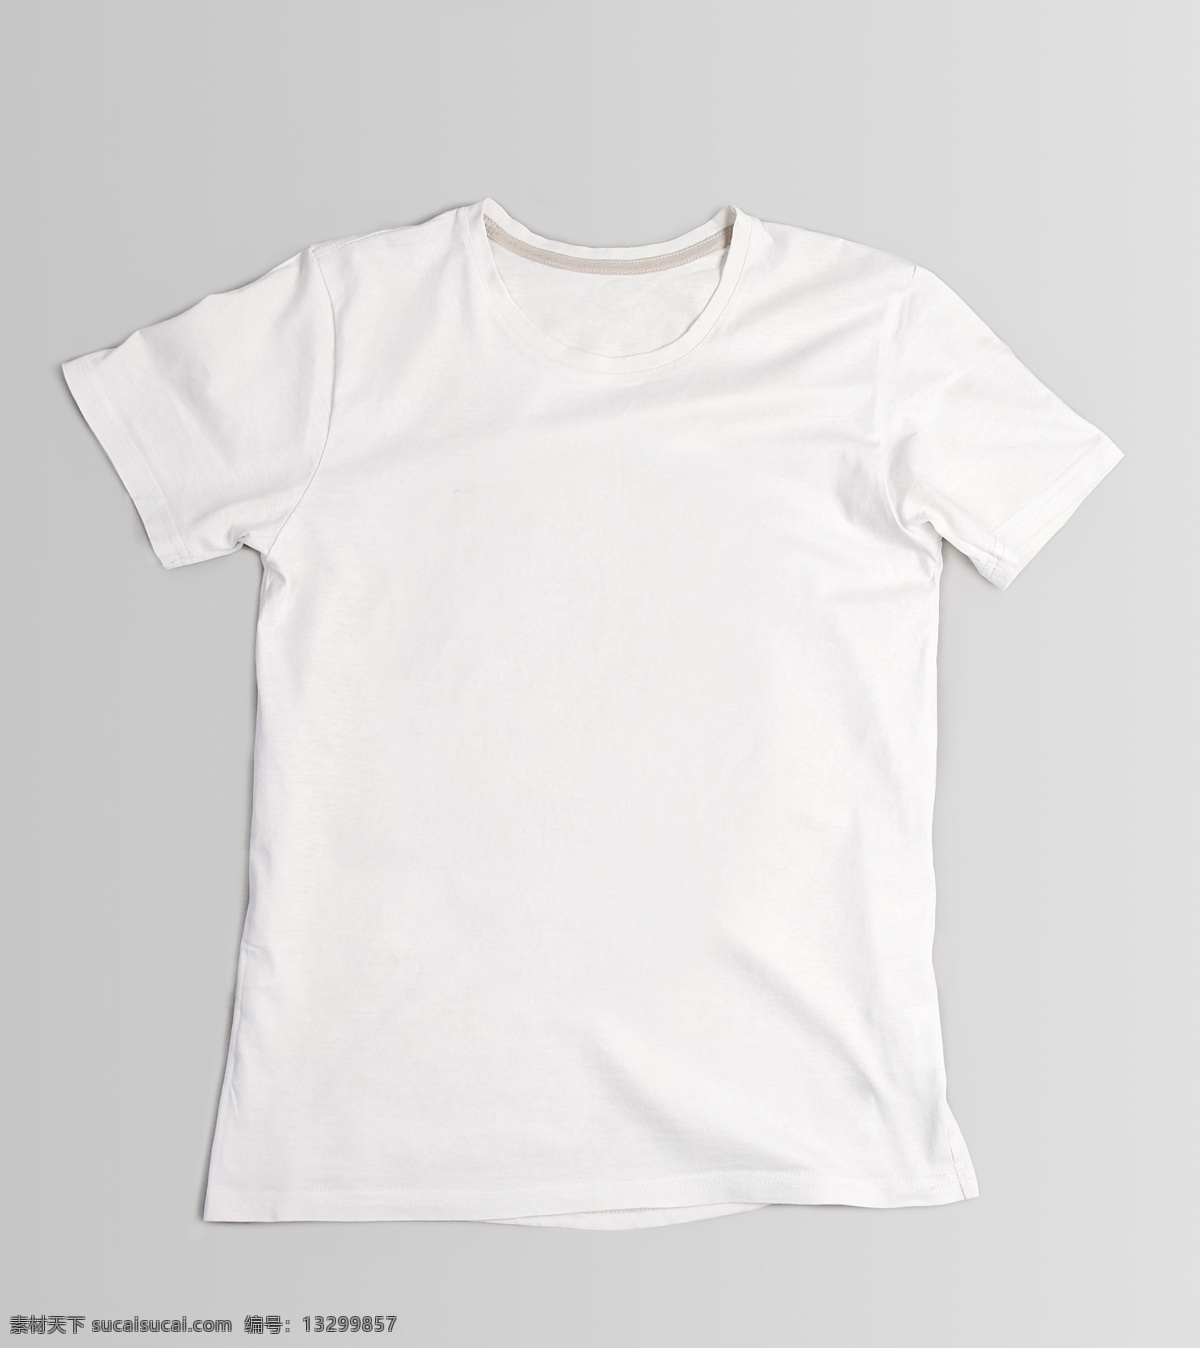 男士 圆领 短袖 男士空白t恤 短袖t恤衫 tt恤设计 服装设计 白色t恤 珠宝服饰 生活百科